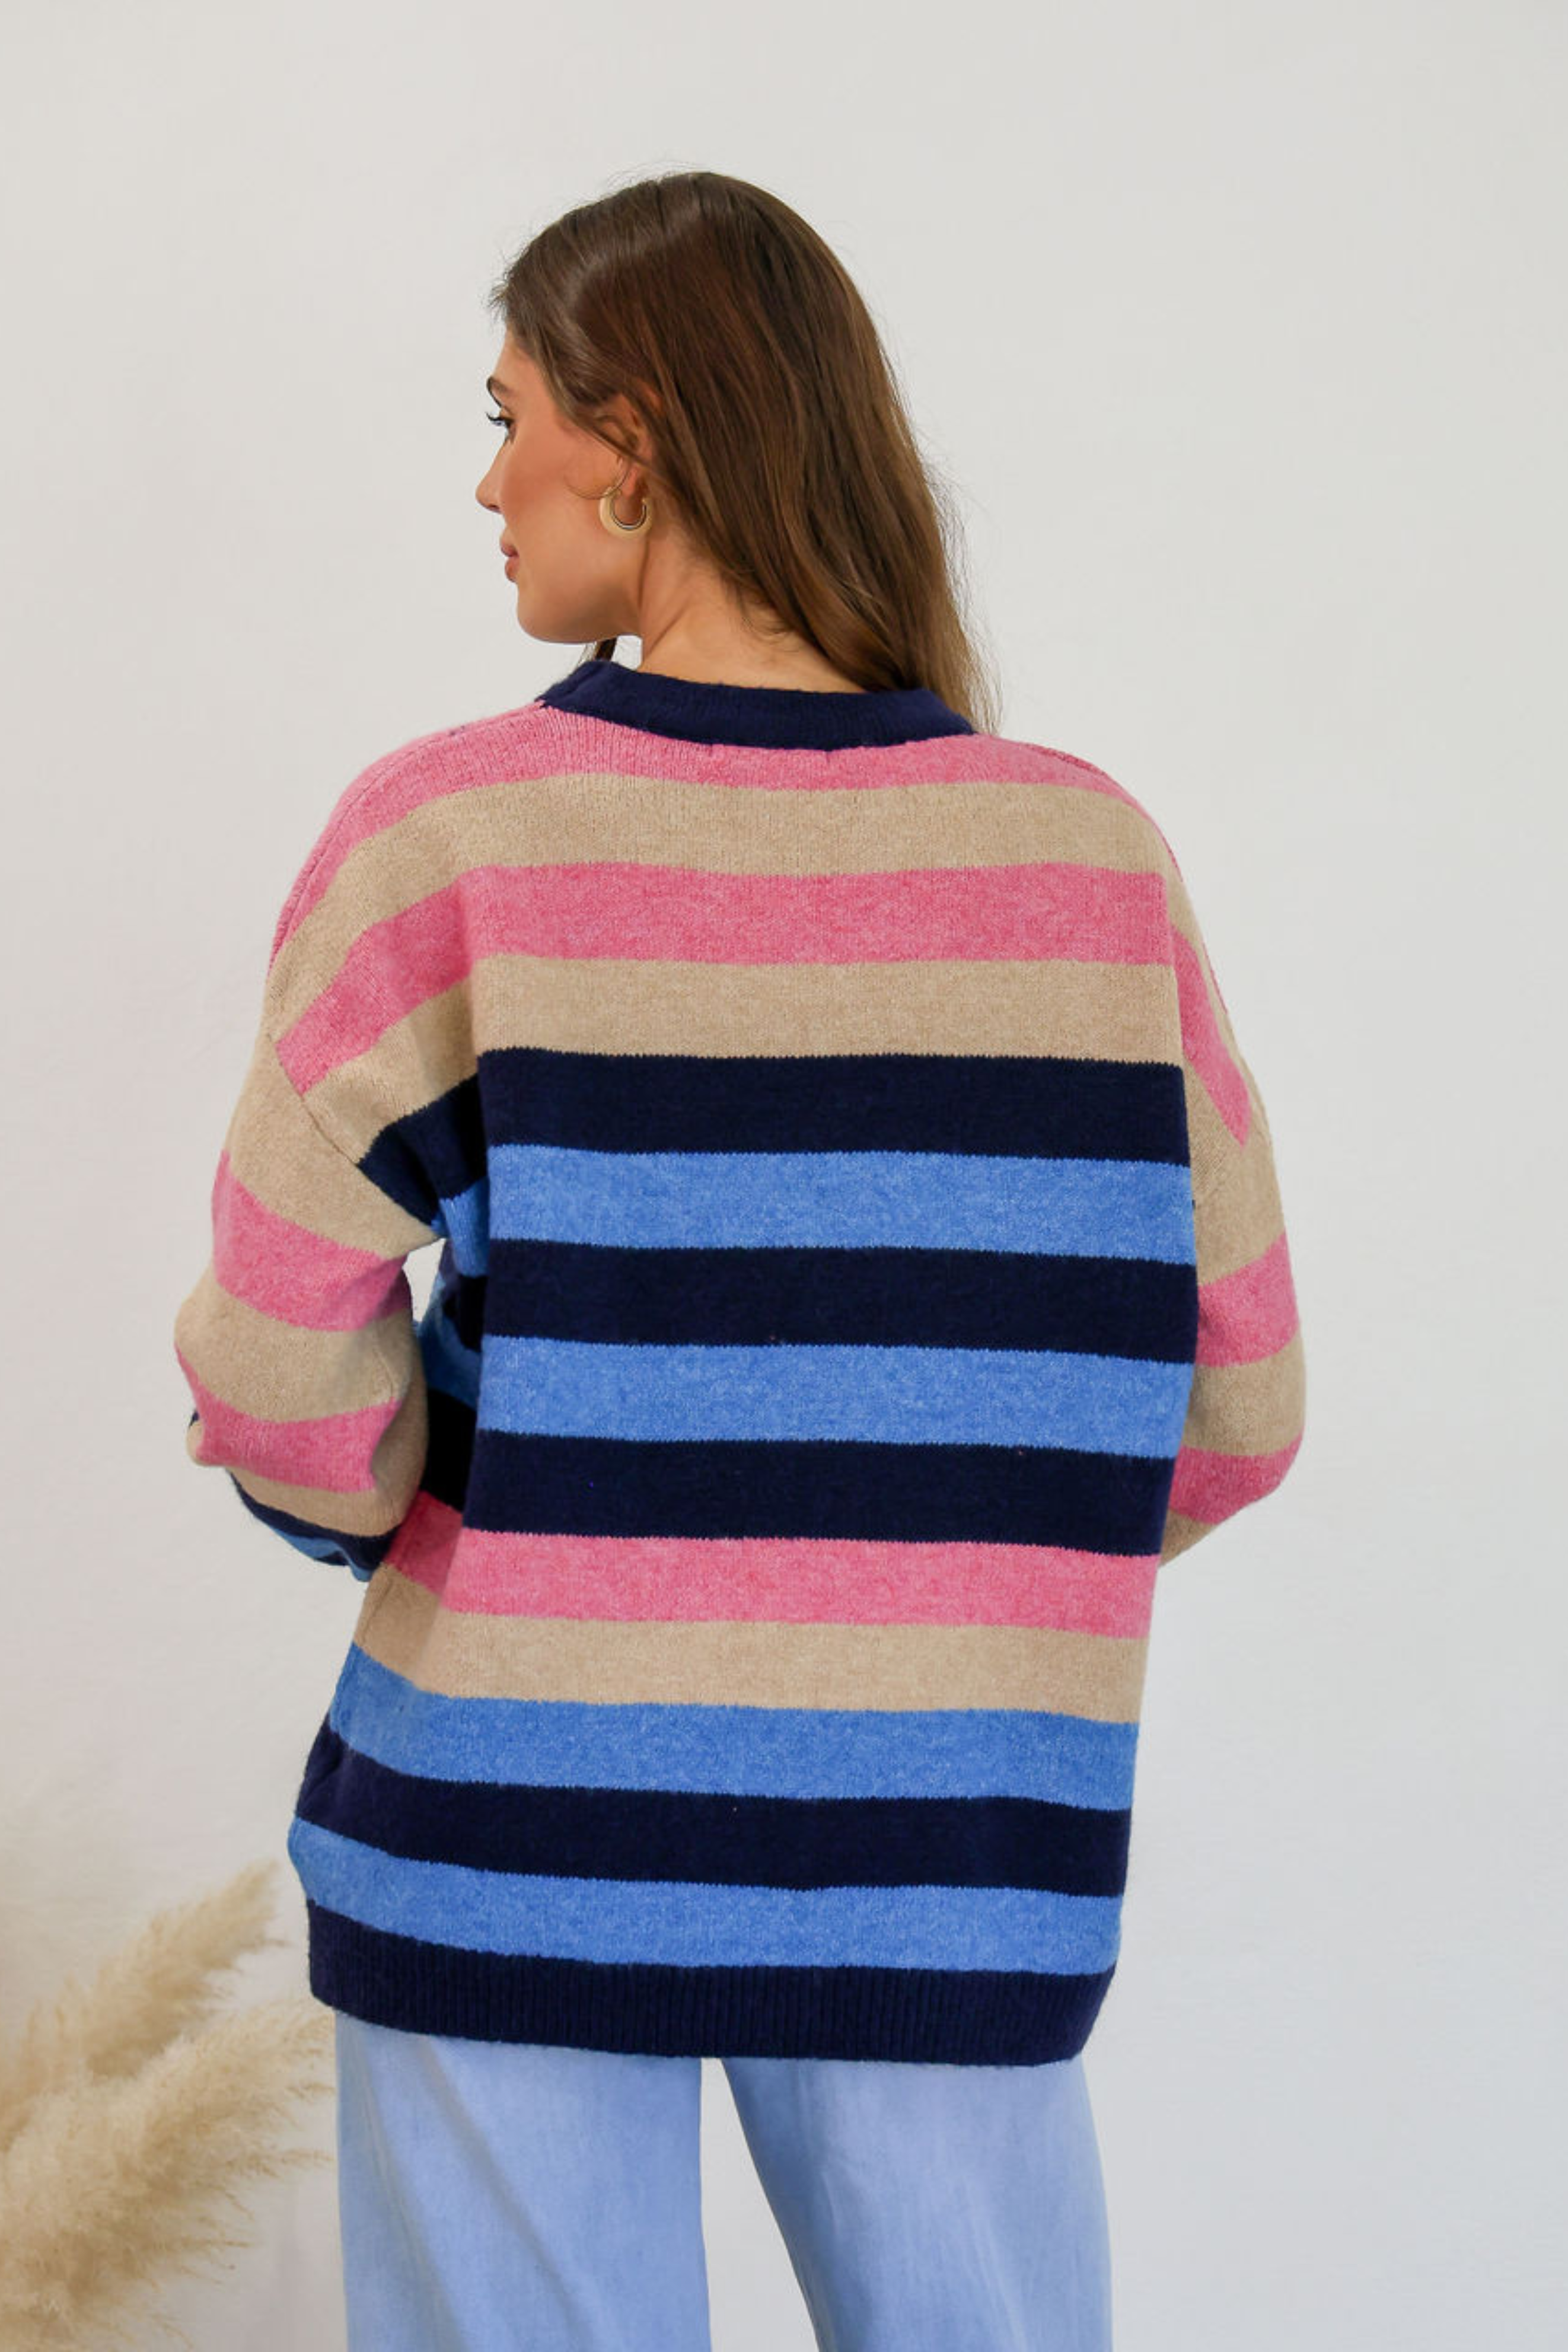 DERBY Knit in Blue Multi Stripe